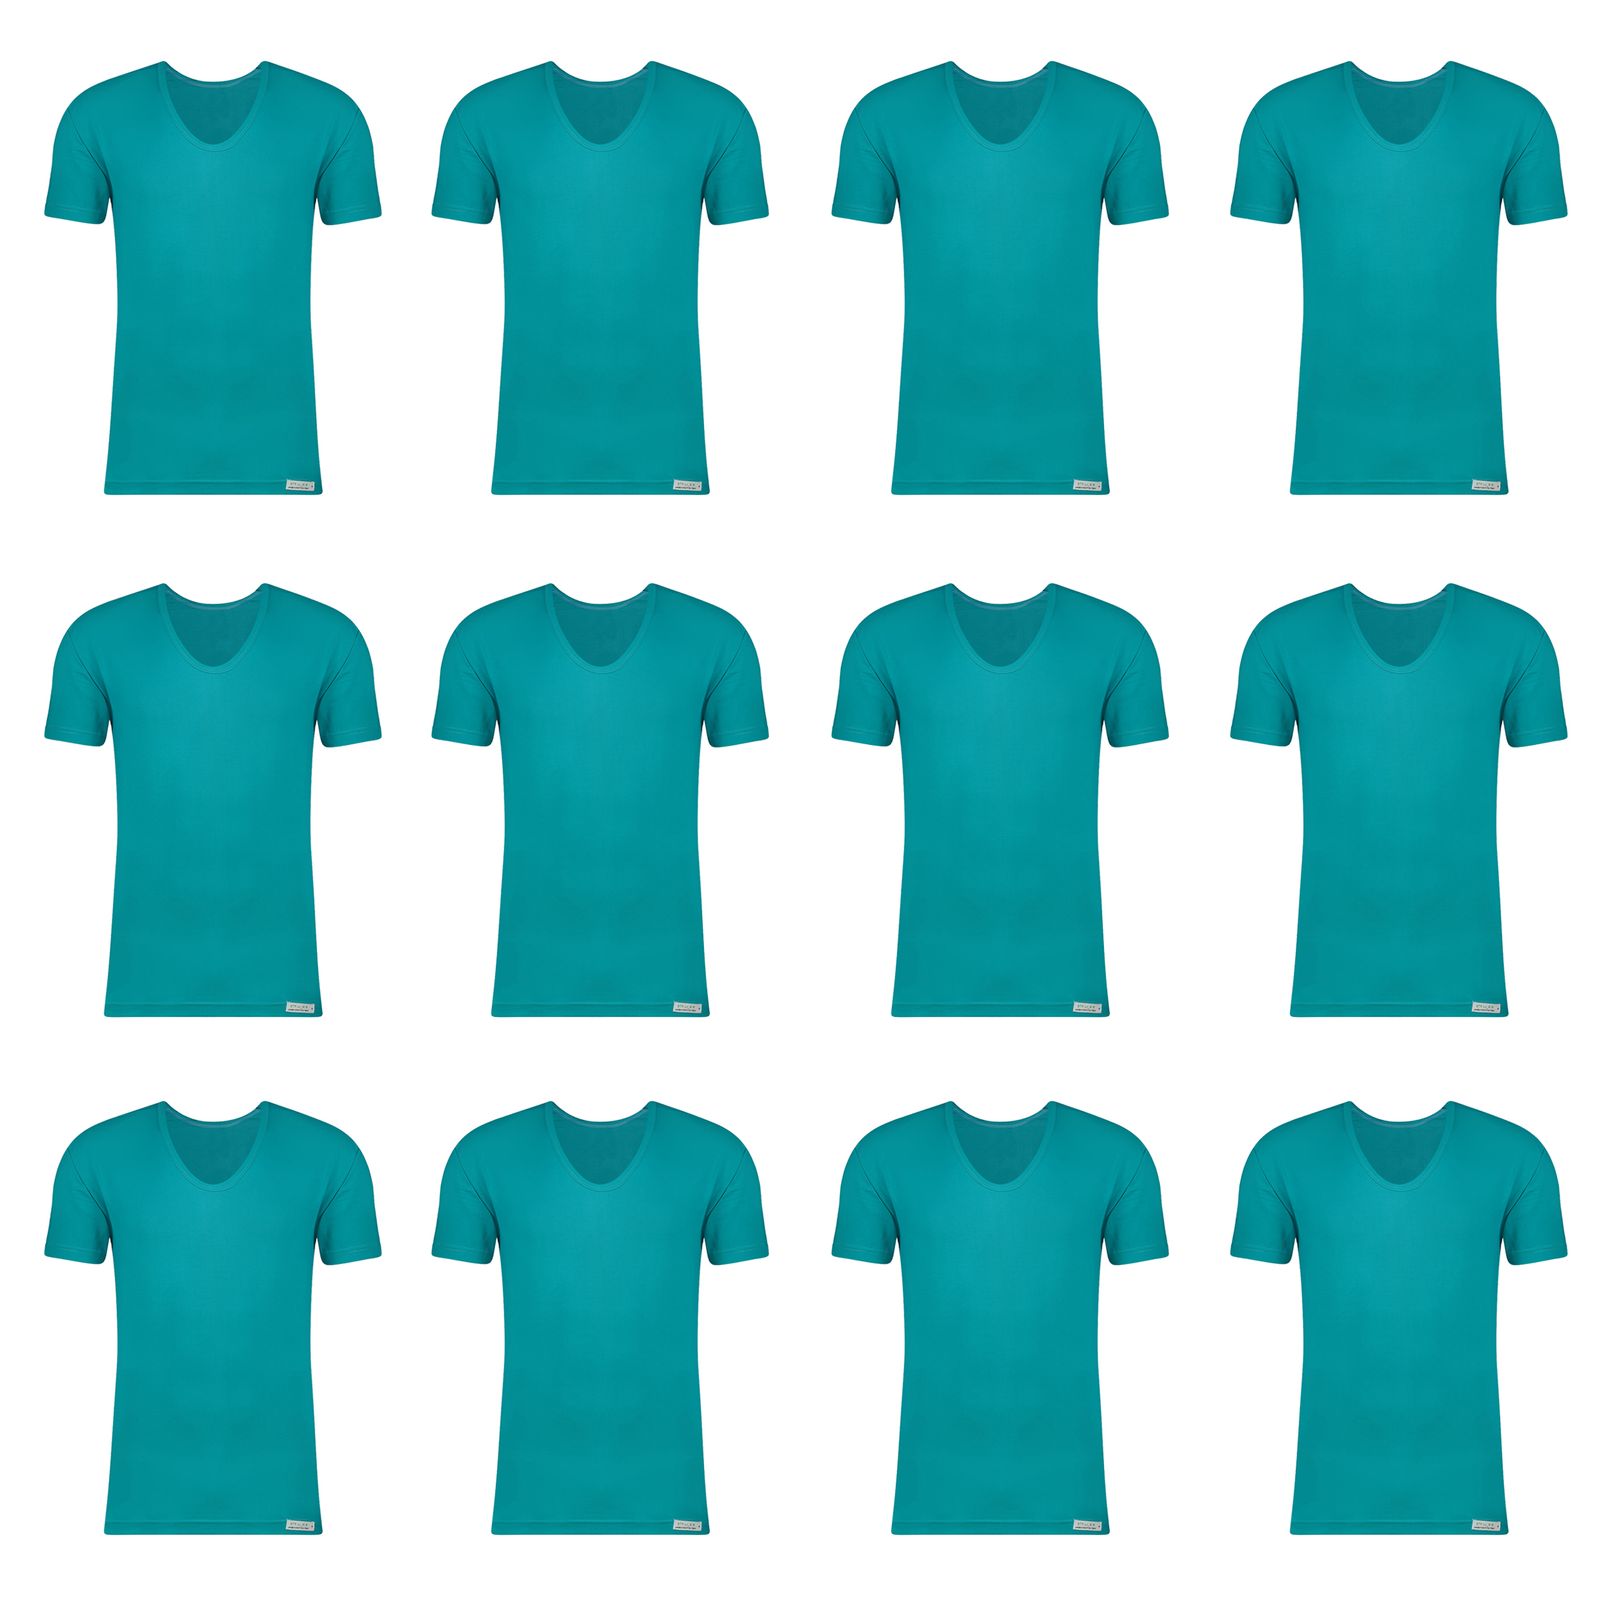 زیرپوش آستین دار مردانه برهان تن پوش مدل 8-02 رنگ آبی بسته 12 عددی